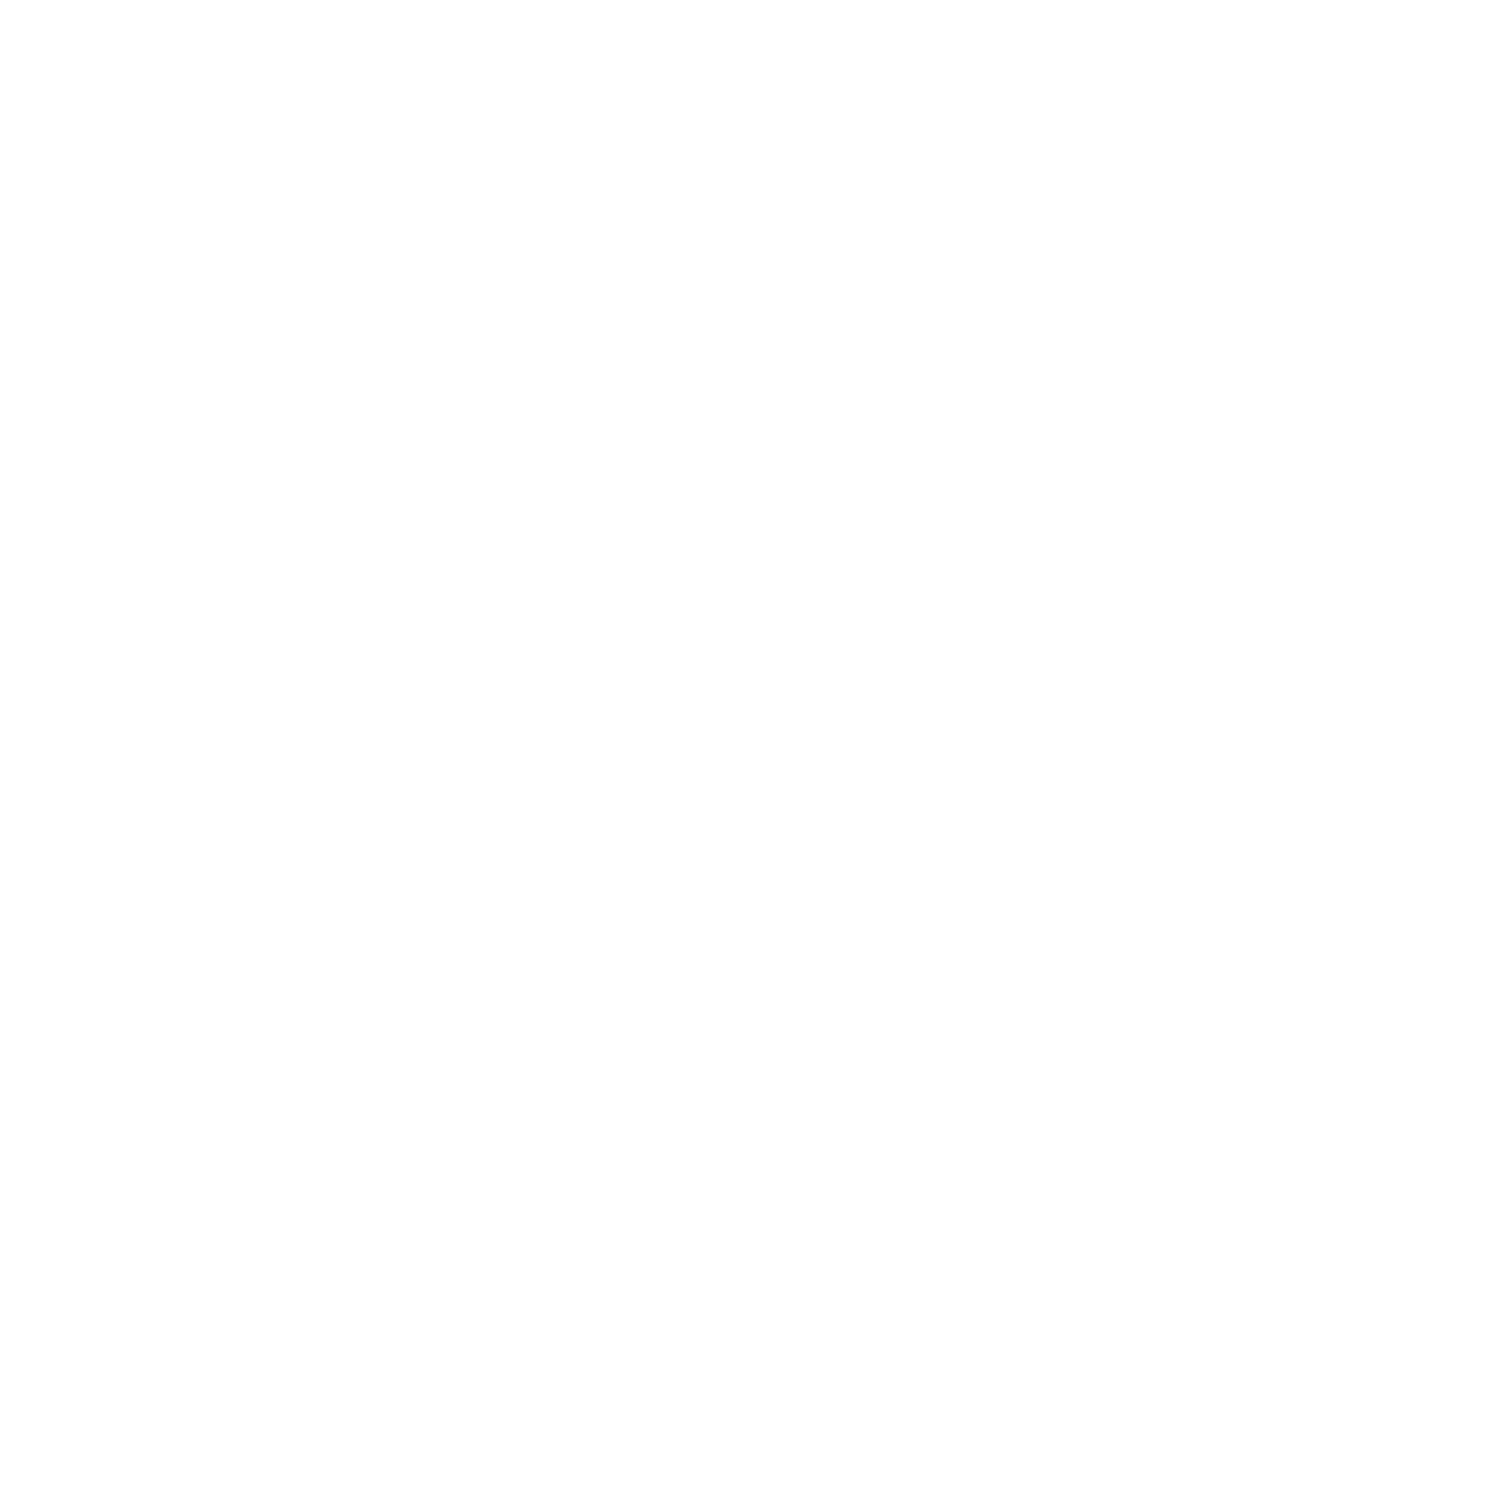 Realist8 Media